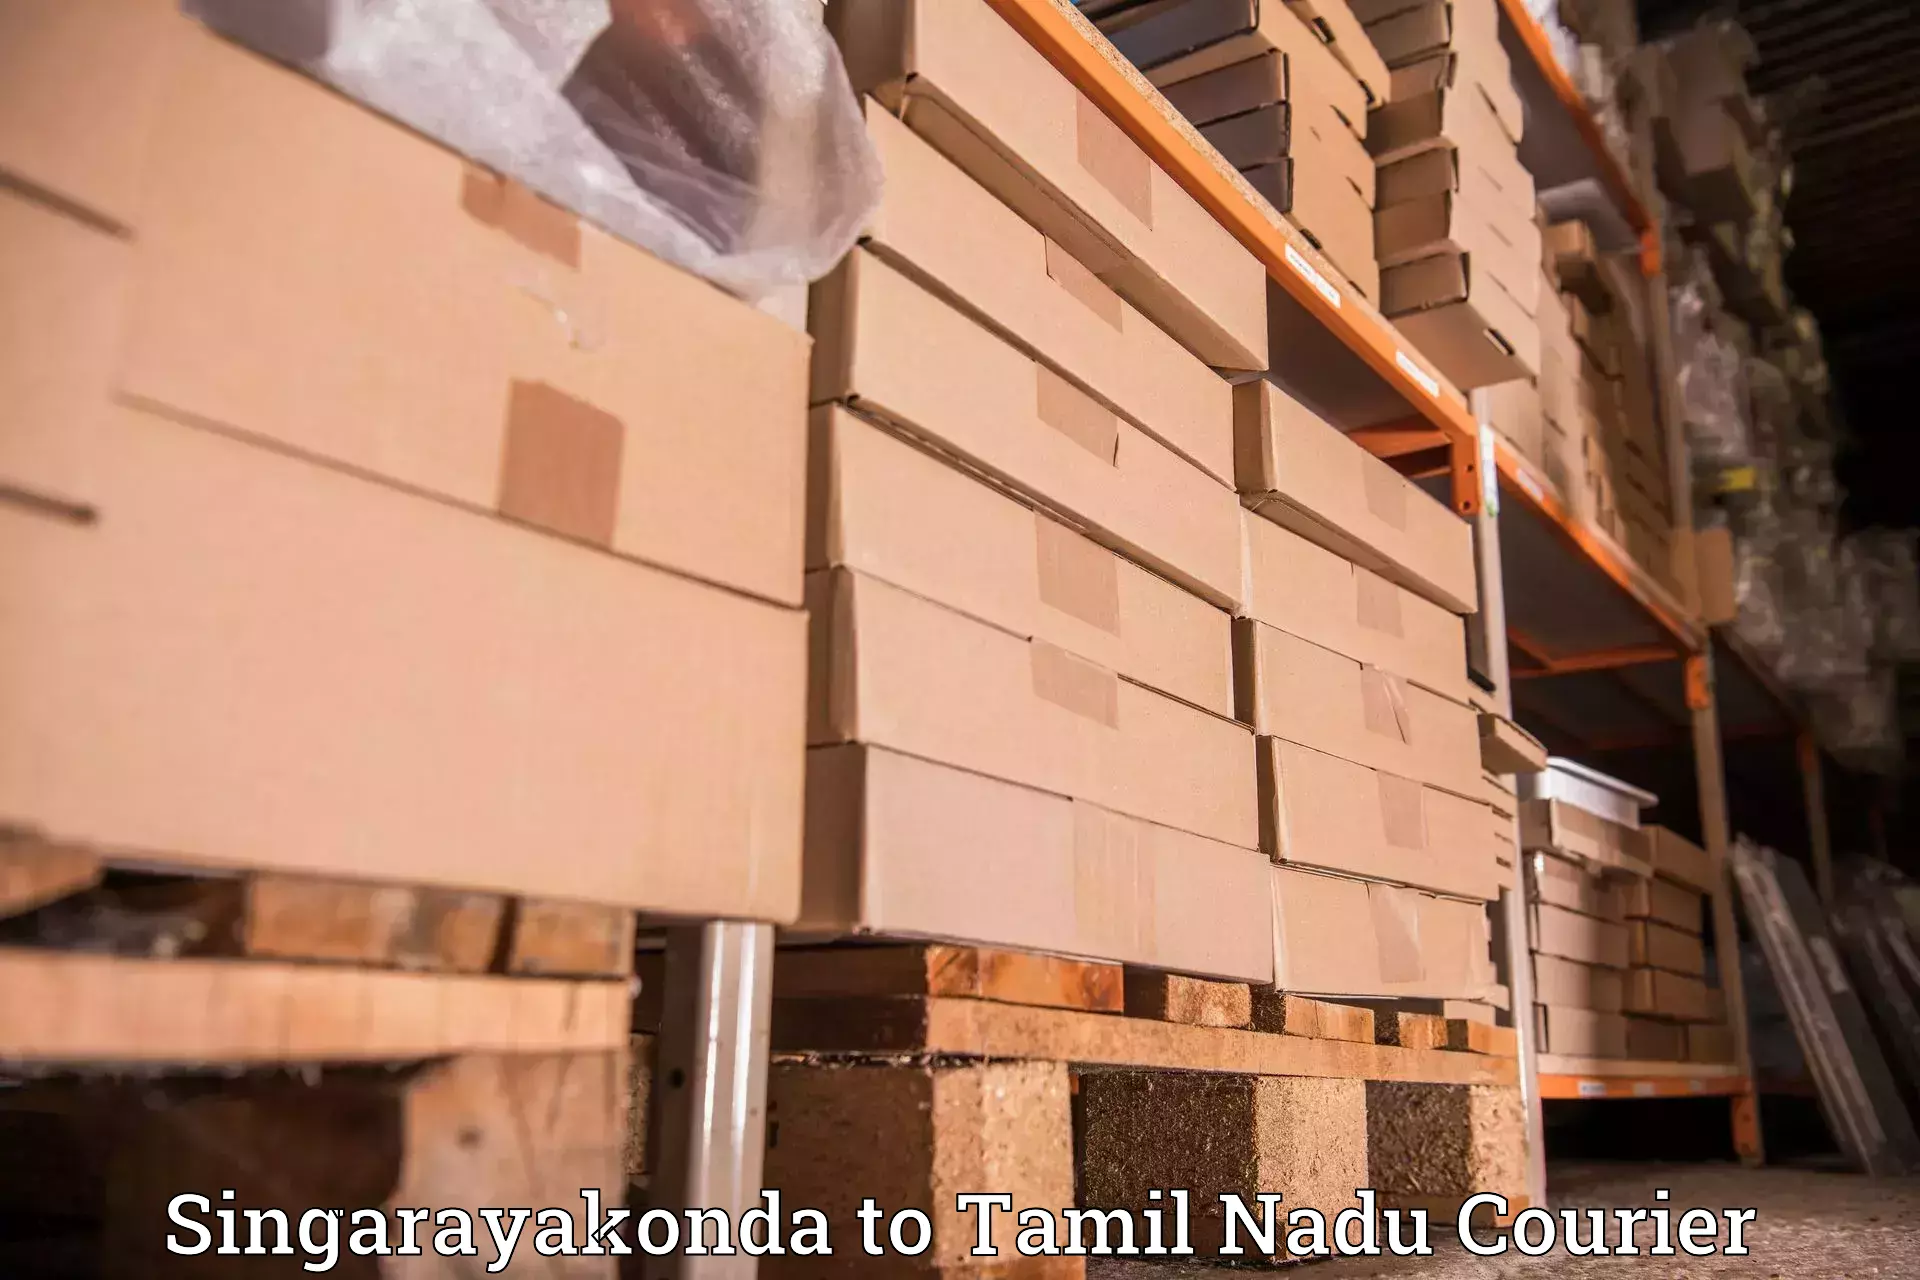 Premium courier solutions Singarayakonda to Gummidipoondi